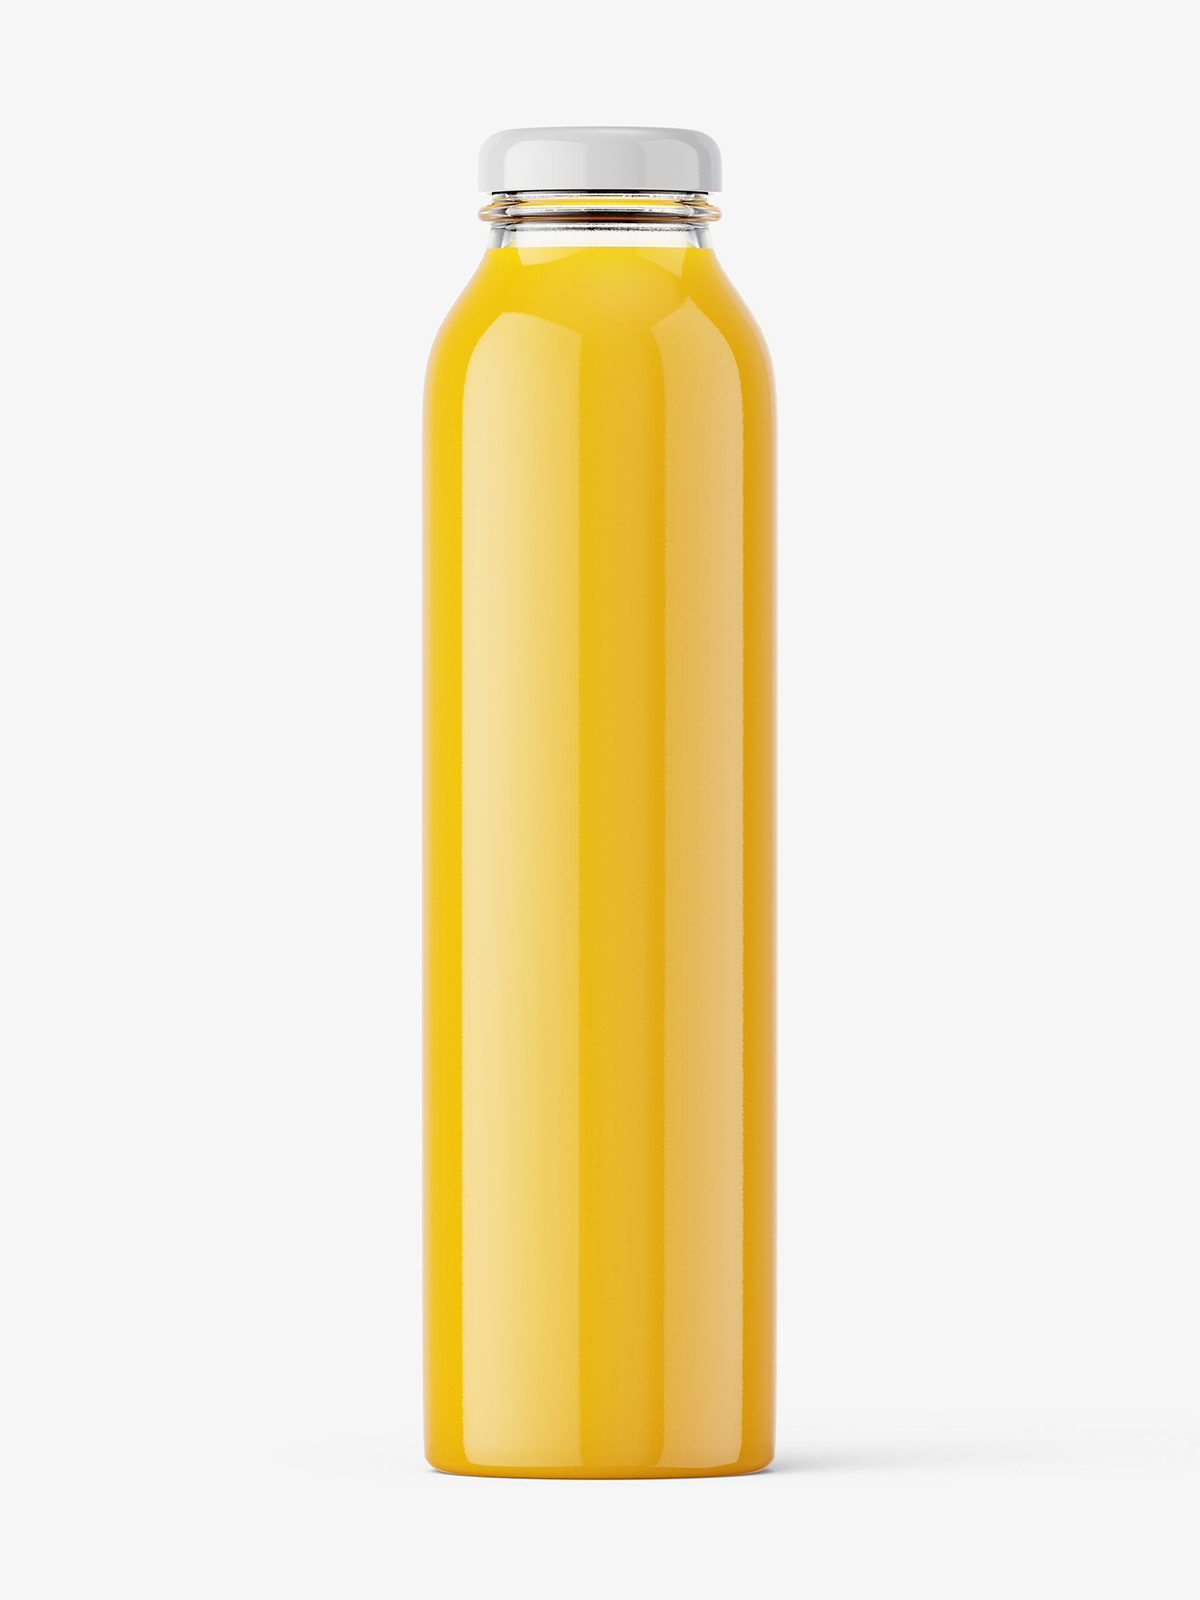 Download Orange juice bottle mockup - Smarty Mockups